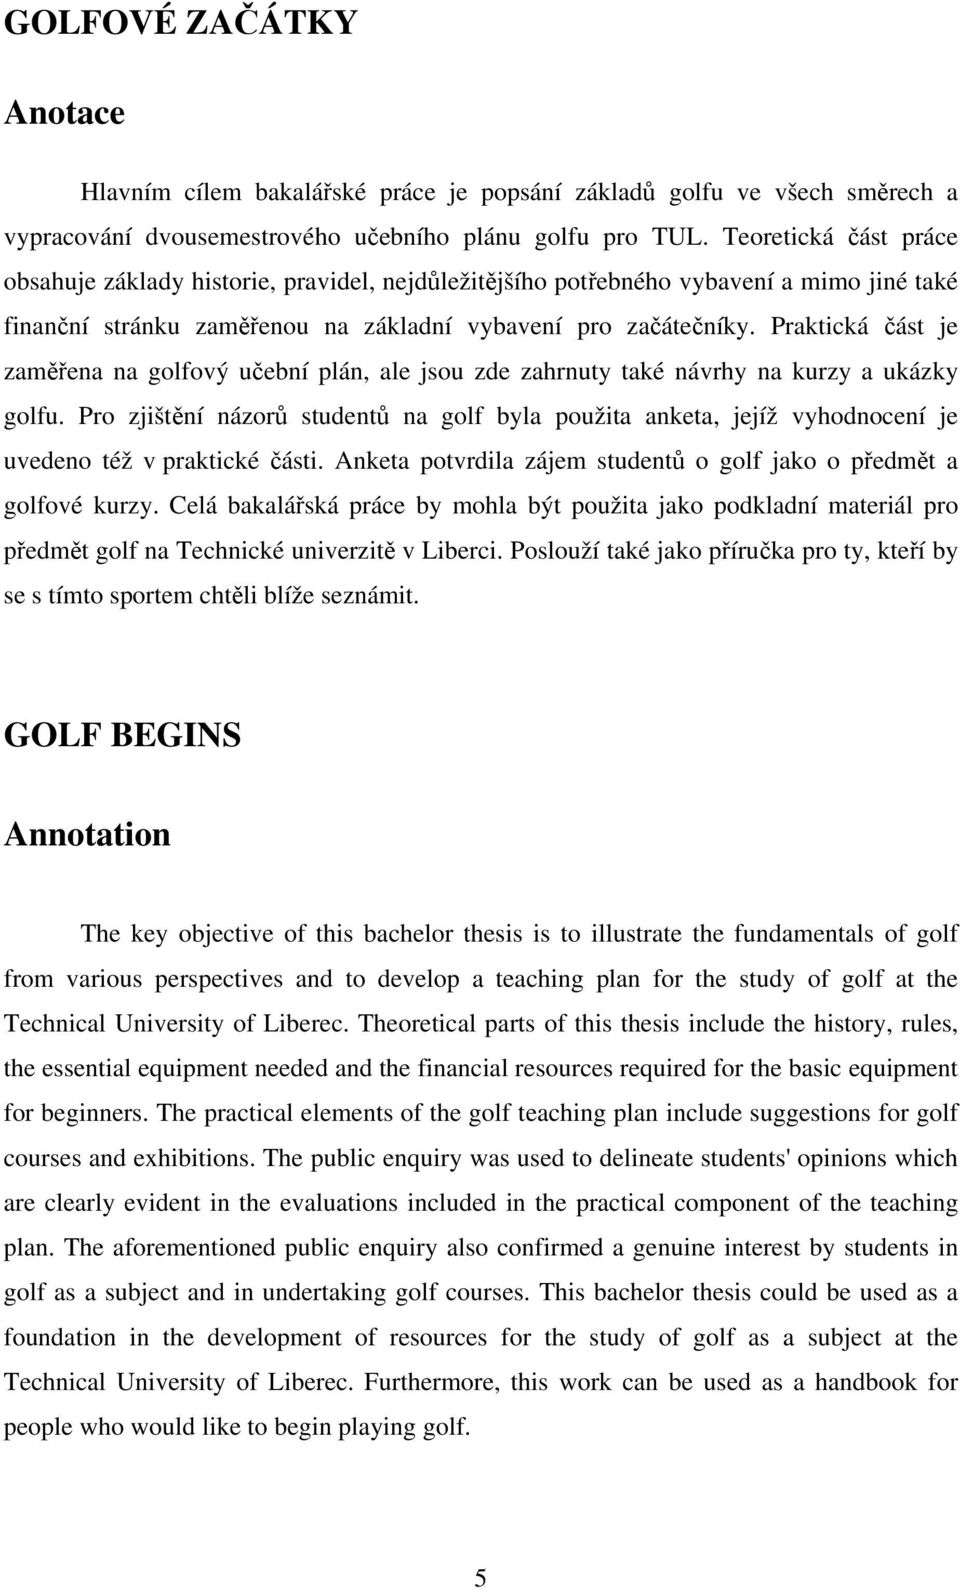 Praktická část je zaměřena na golfový učební plán, ale jsou zde zahrnuty také návrhy na kurzy a ukázky golfu.